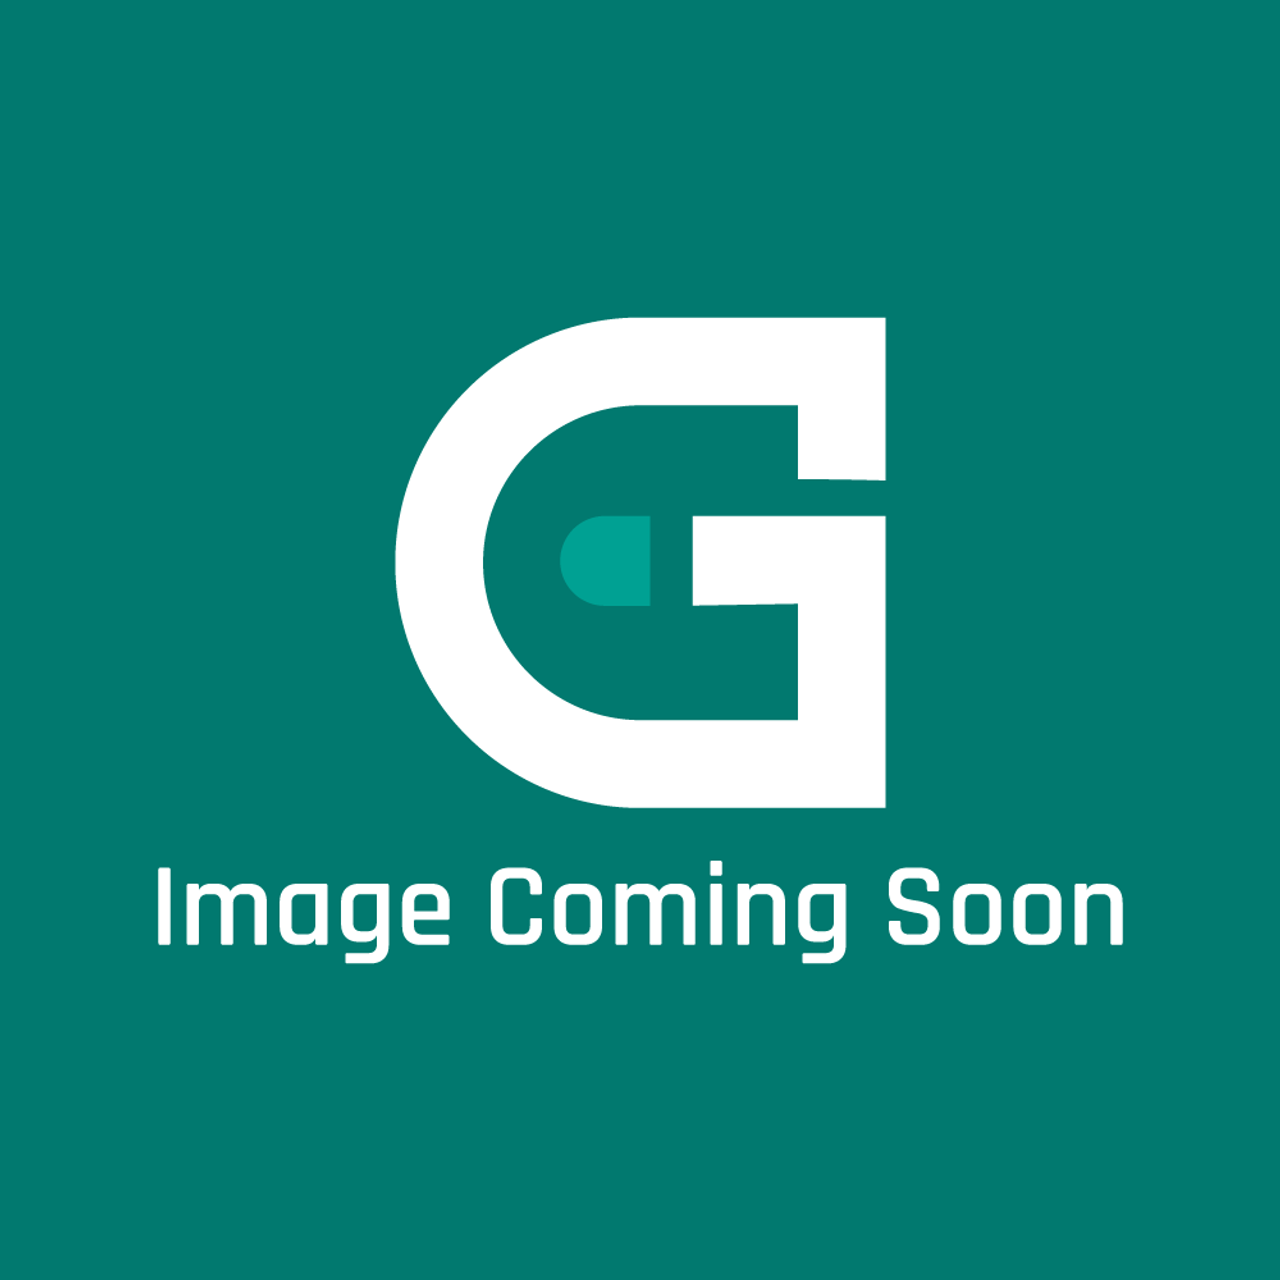 Vulcan Hart VH00-497374-000G1 - Filter, Vessel Gr45F, Gr 65F - Image Coming Soon!